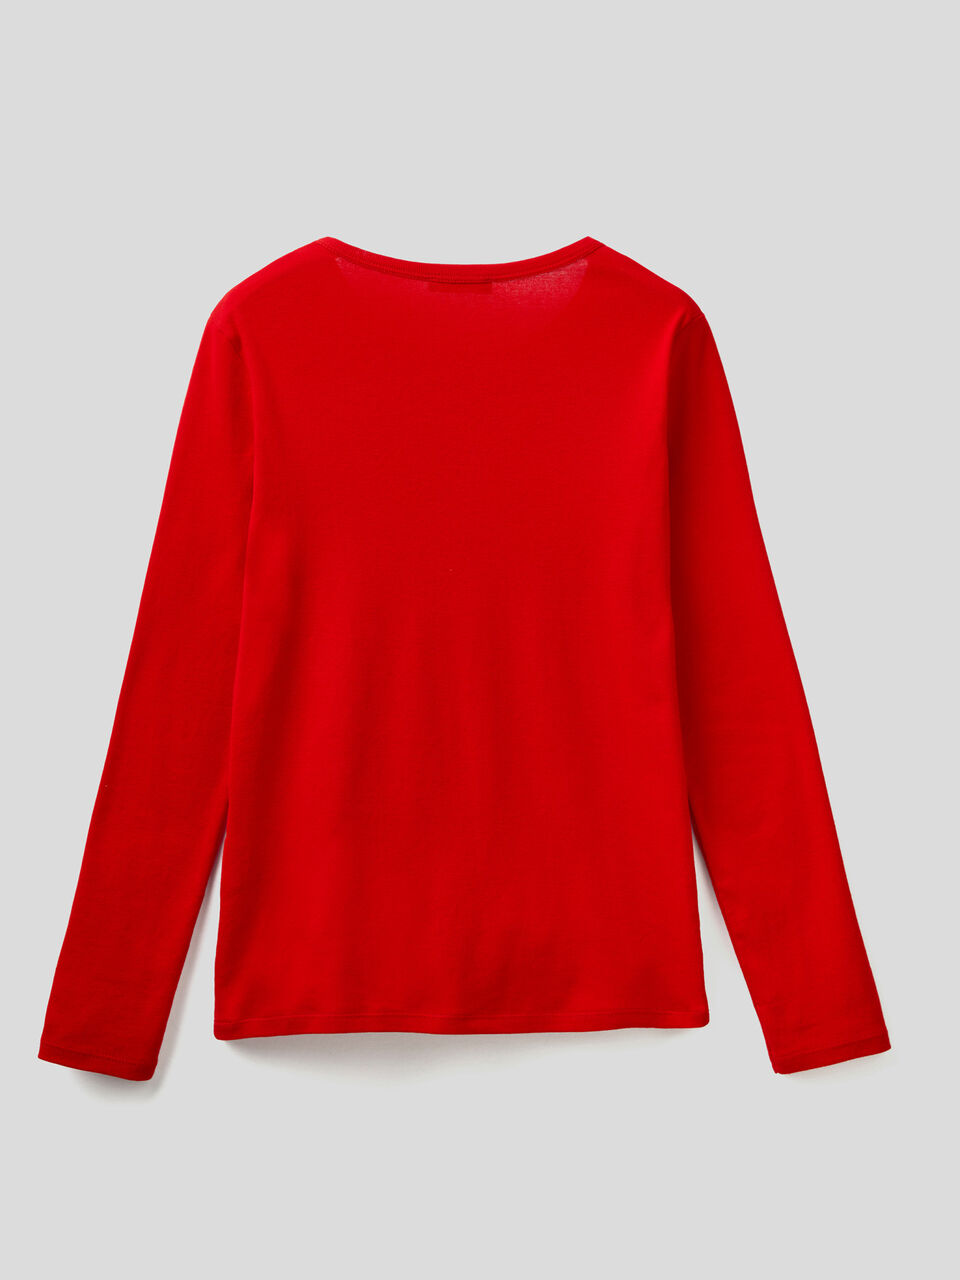 Paradoja terminado presente Camiseta roja de manga larga de 100 % algodón - Rojo | Benetton